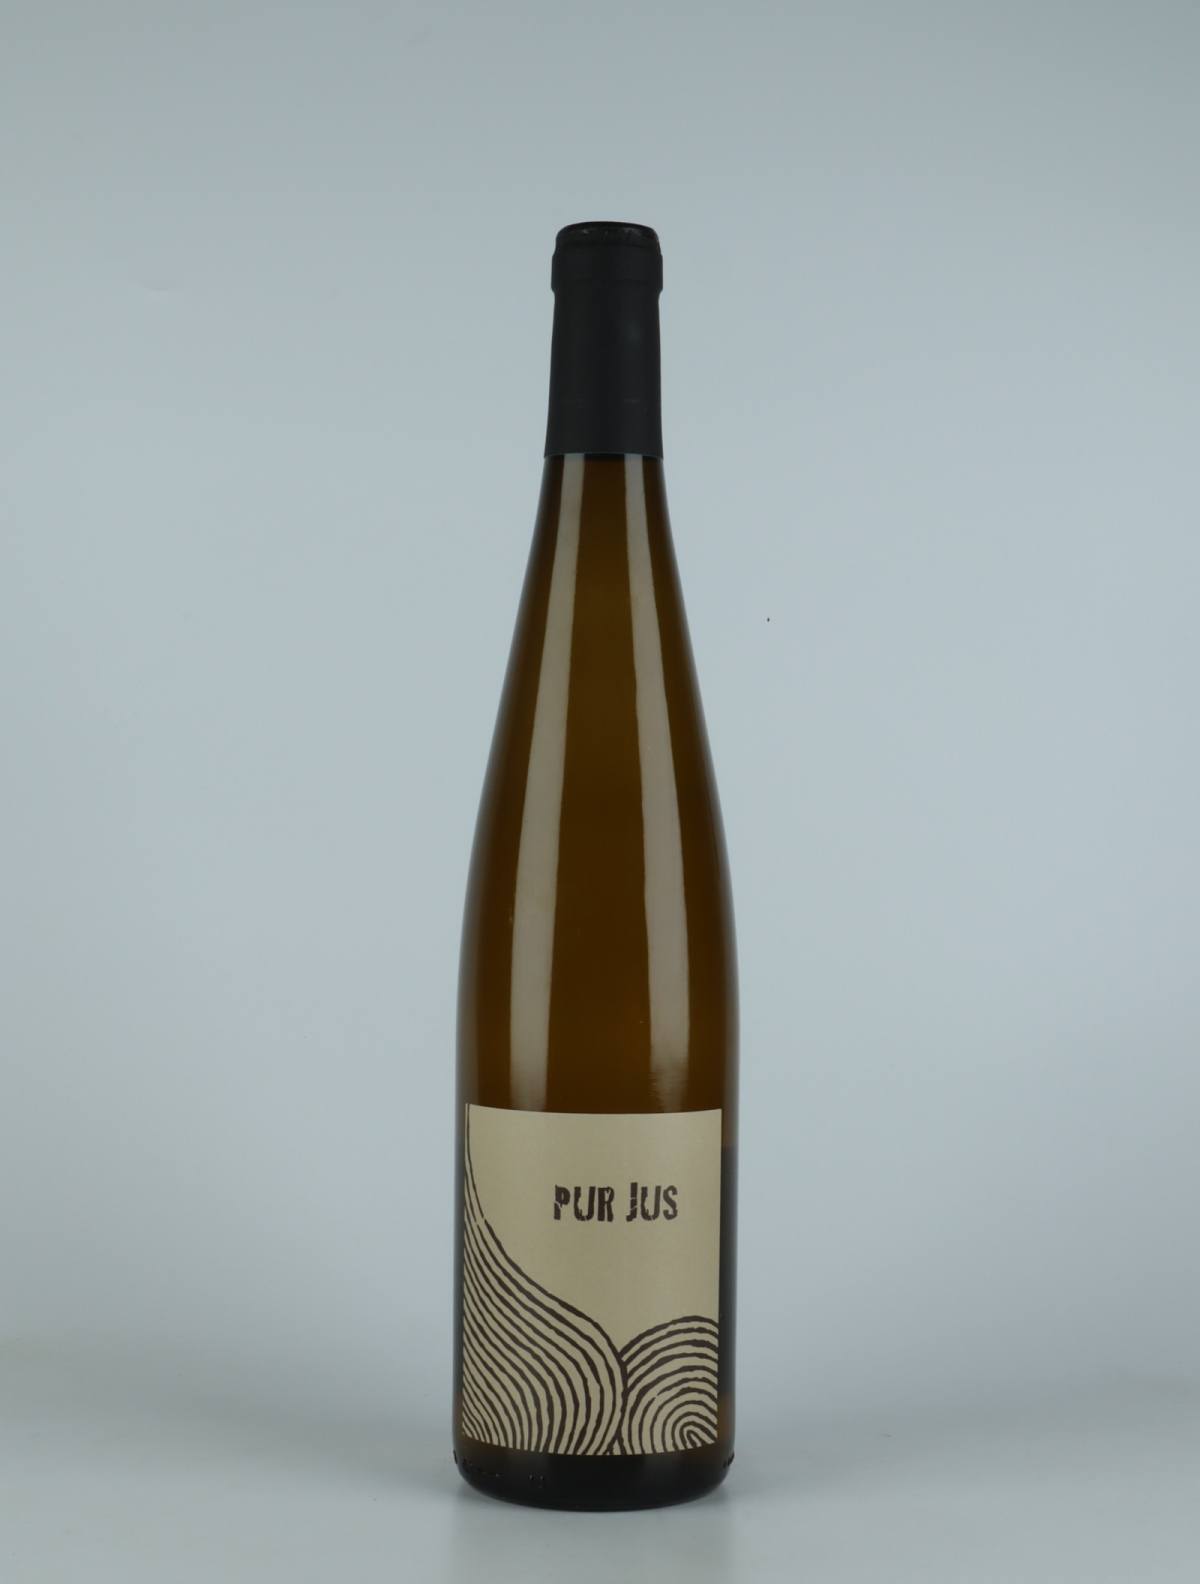 En flaske 2021 Pur Jus Blanc Hvidvin fra Ruhlmann Dirringer, Alsace i Frankrig